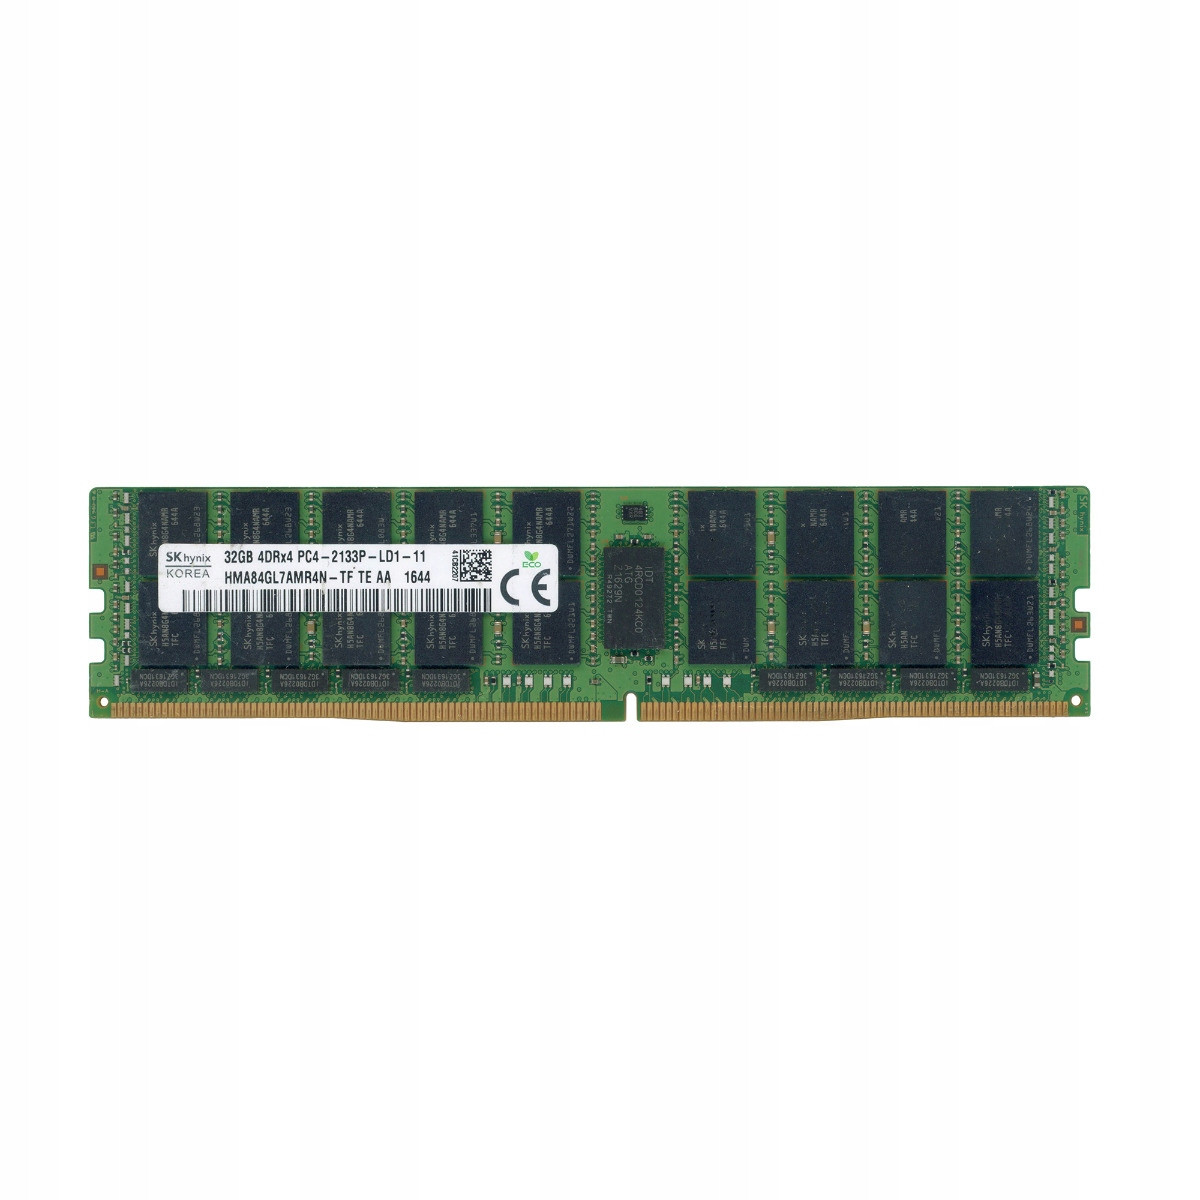 Hynix HMA84GL7AMR4N-TF 32GB DDR4 2133MHz Load Reduced Ecc